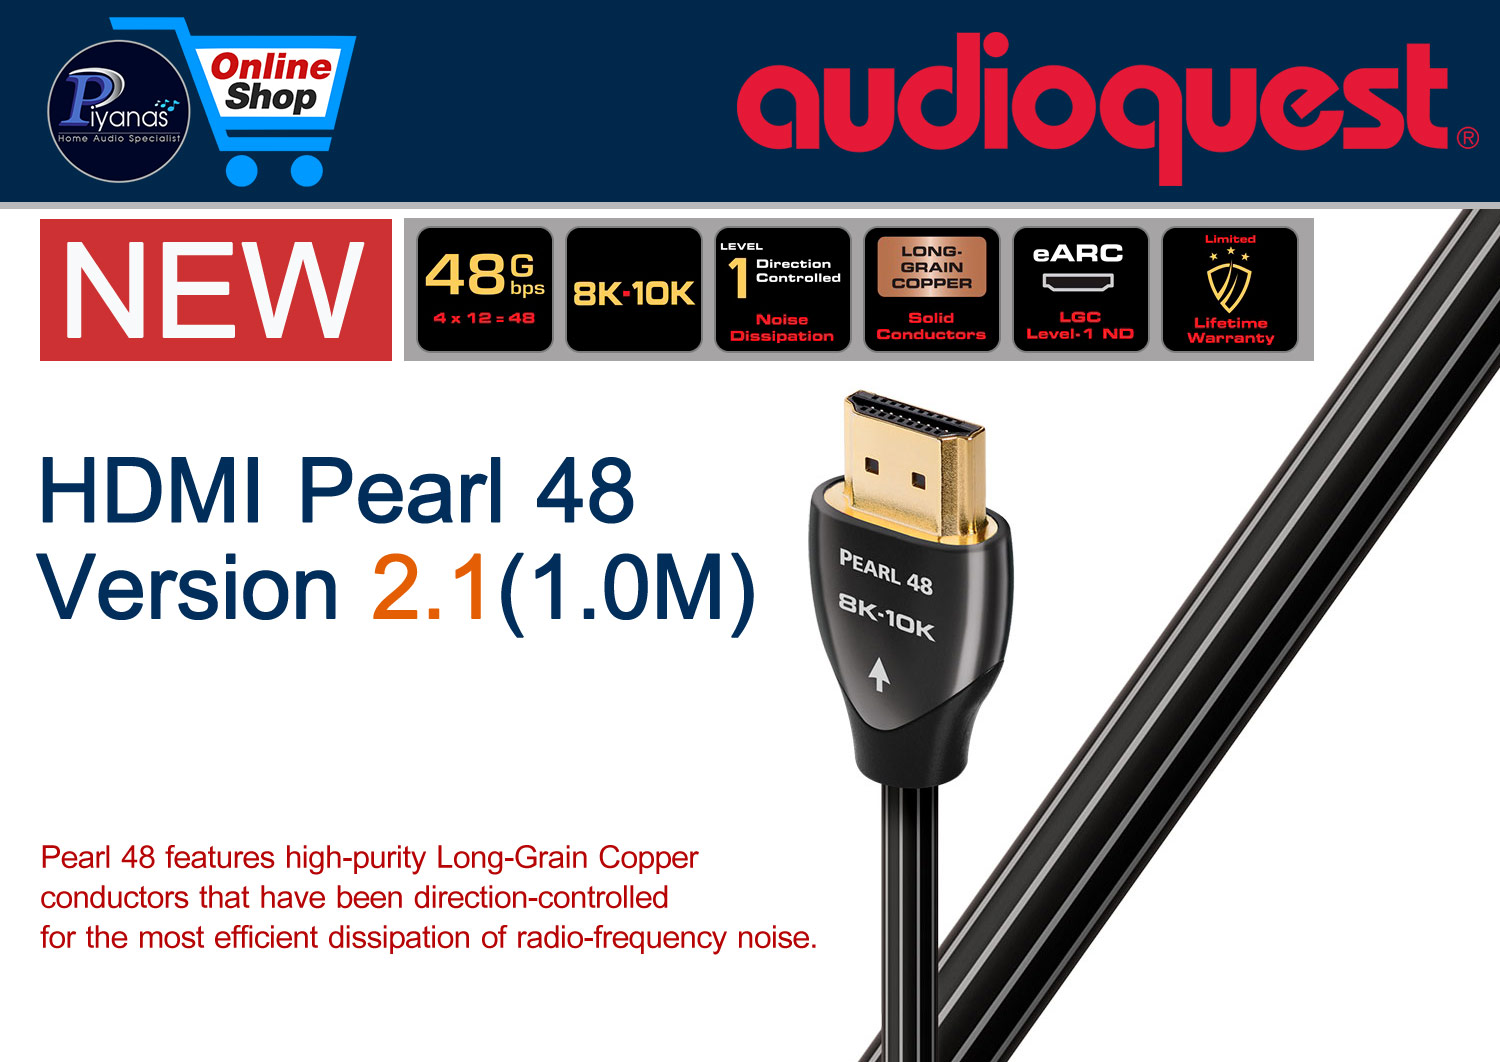 HDMI-Pearl Version 2.1 (1.0M)